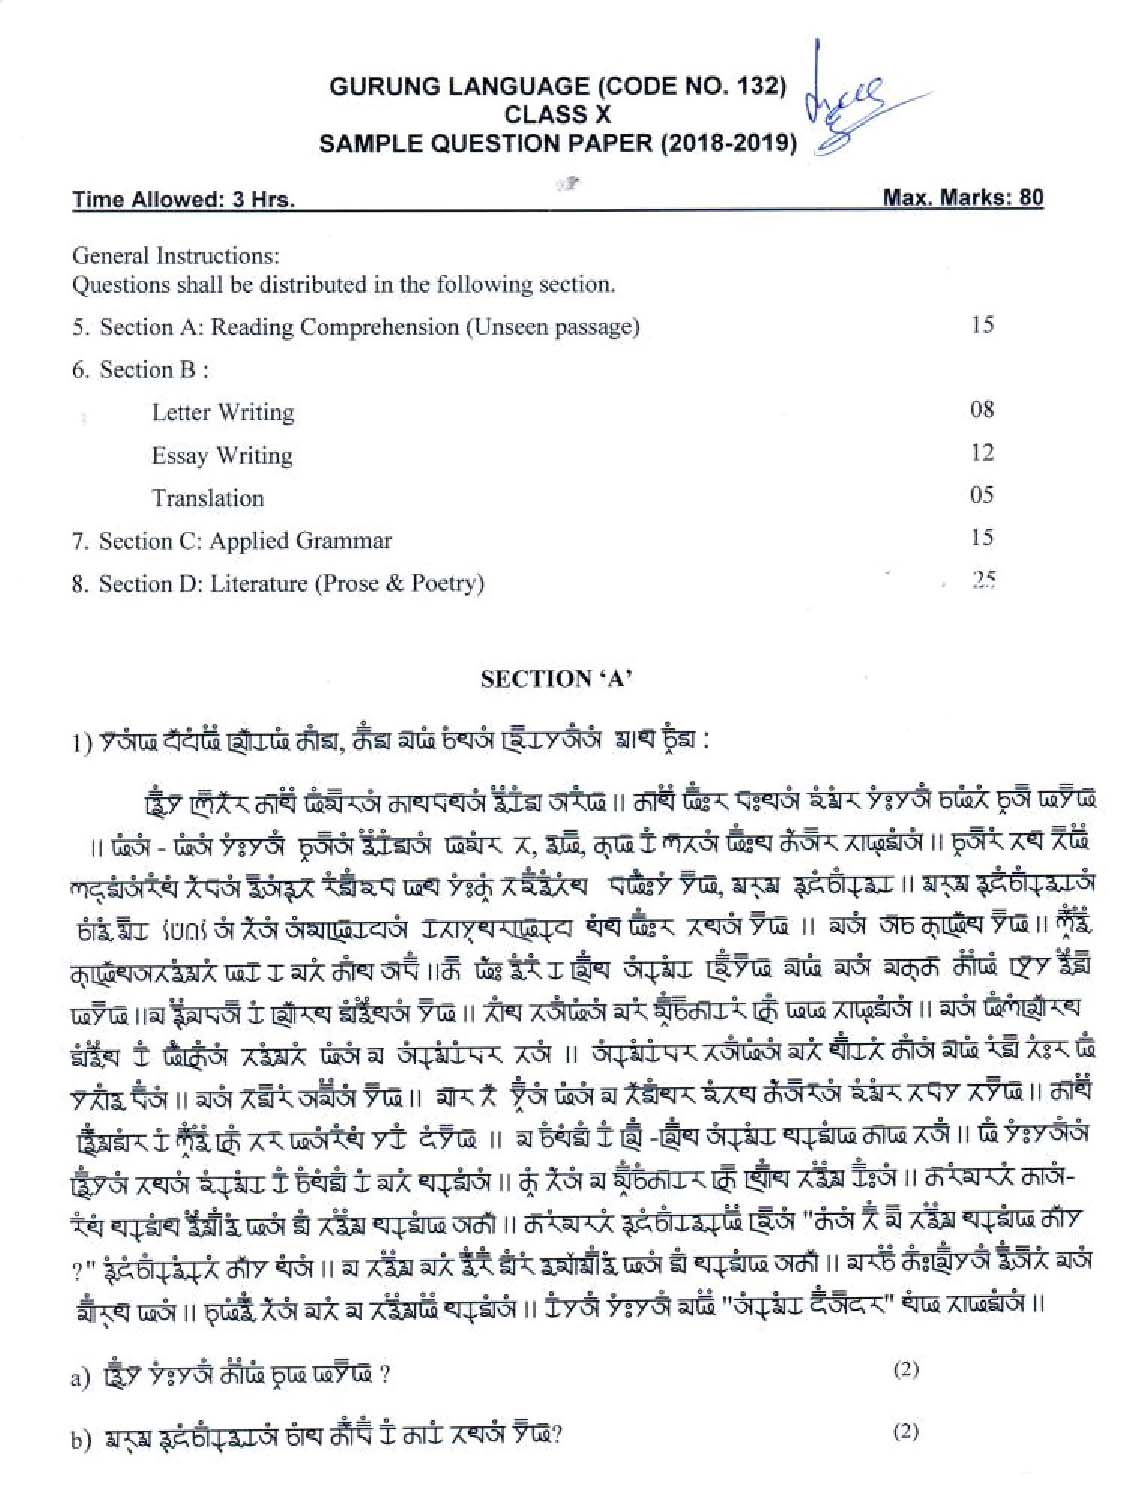 Gurung CBSE Class X Sample Question Paper 2018-19 - Image 1